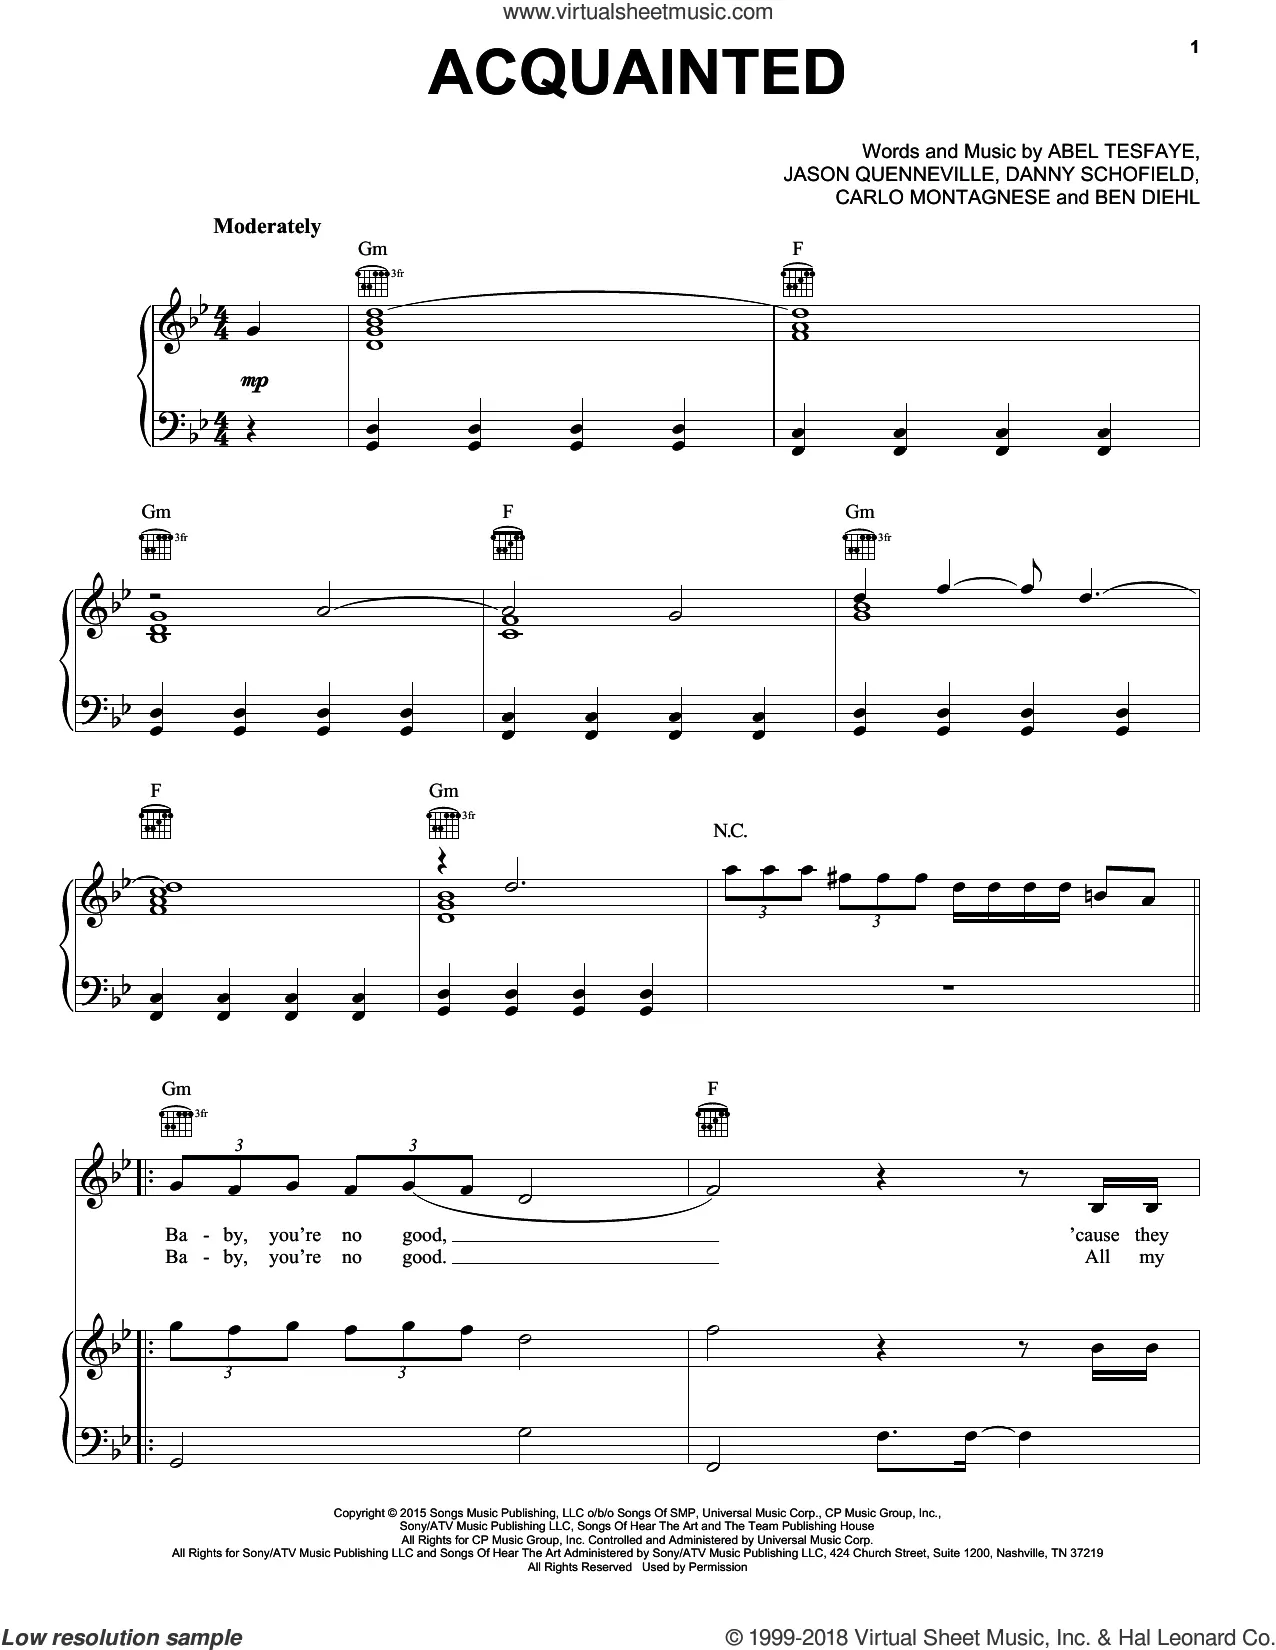 The Weeknd - Sacrifice – piano solo sheet music Sheet music for Piano  (Solo)